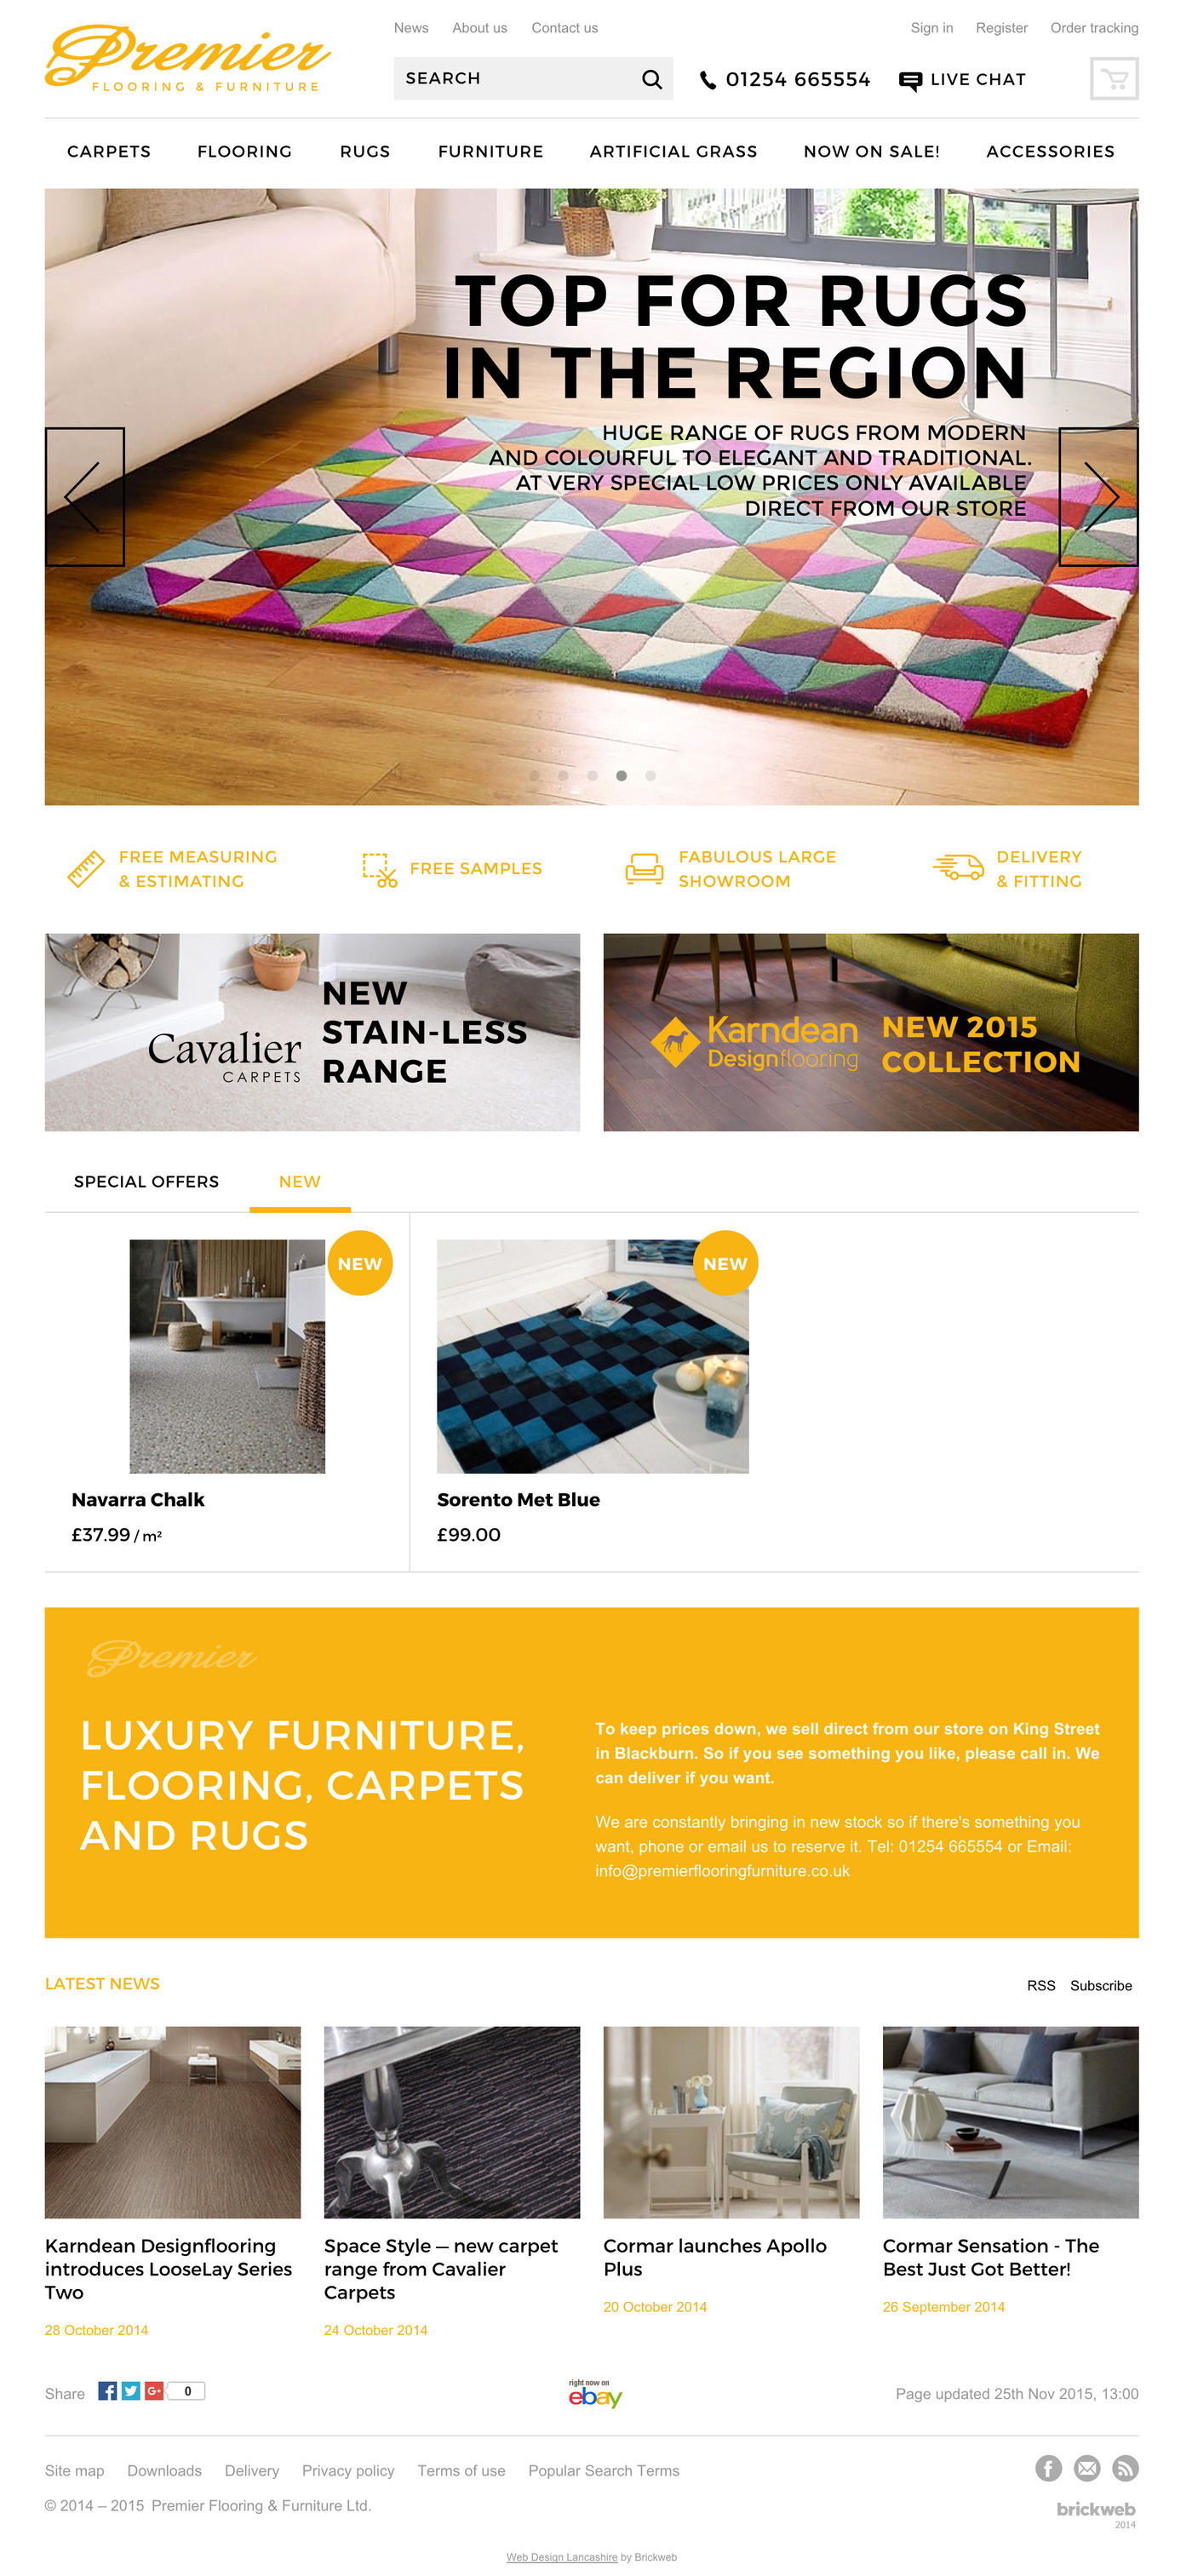 Premier Flooring & Furniture Homepage